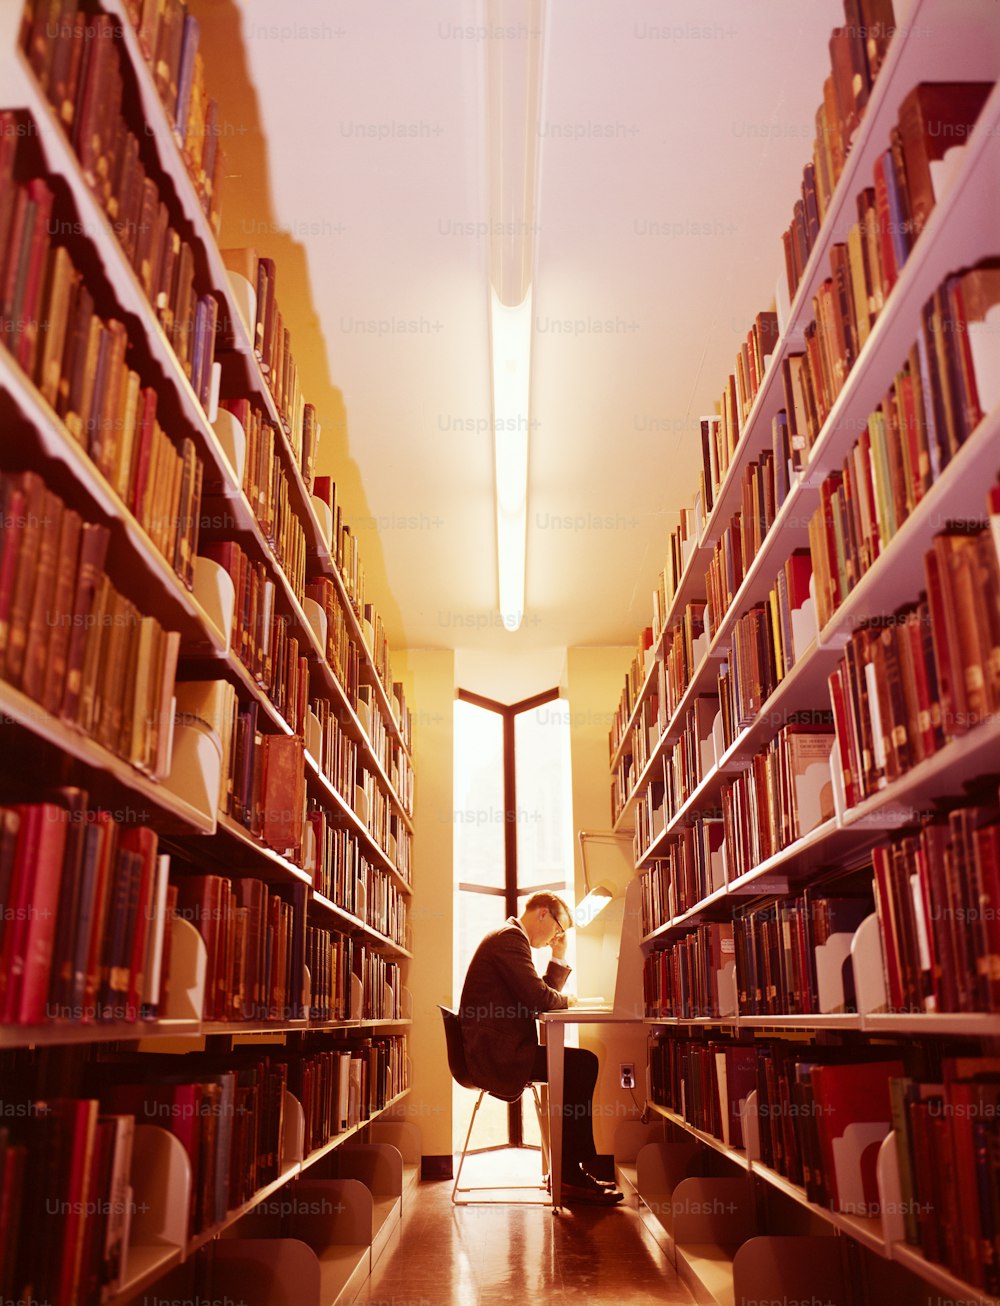 ESTADOS UNIDOS - CIRCA 1960s: Hombre en la biblioteca.